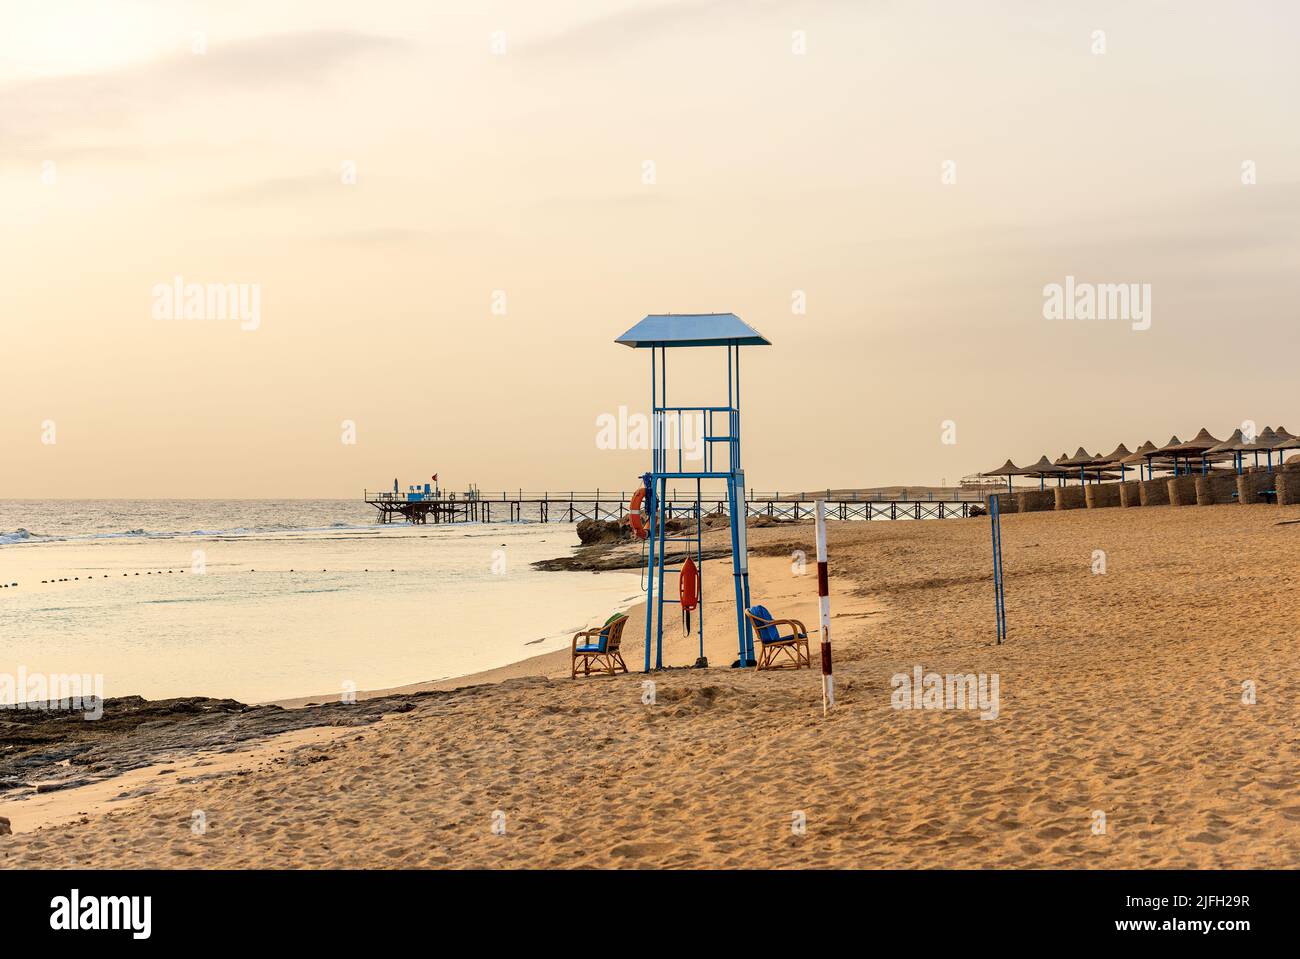 Sandstrand in der Nähe von Marsa Alam mit einem Pier über dem Korallenriff zum Tauchen, Schnorcheln und Schwimmen und einer Gruppe von Sonnenschirmen. Ägypten, Afrika. Stockfoto